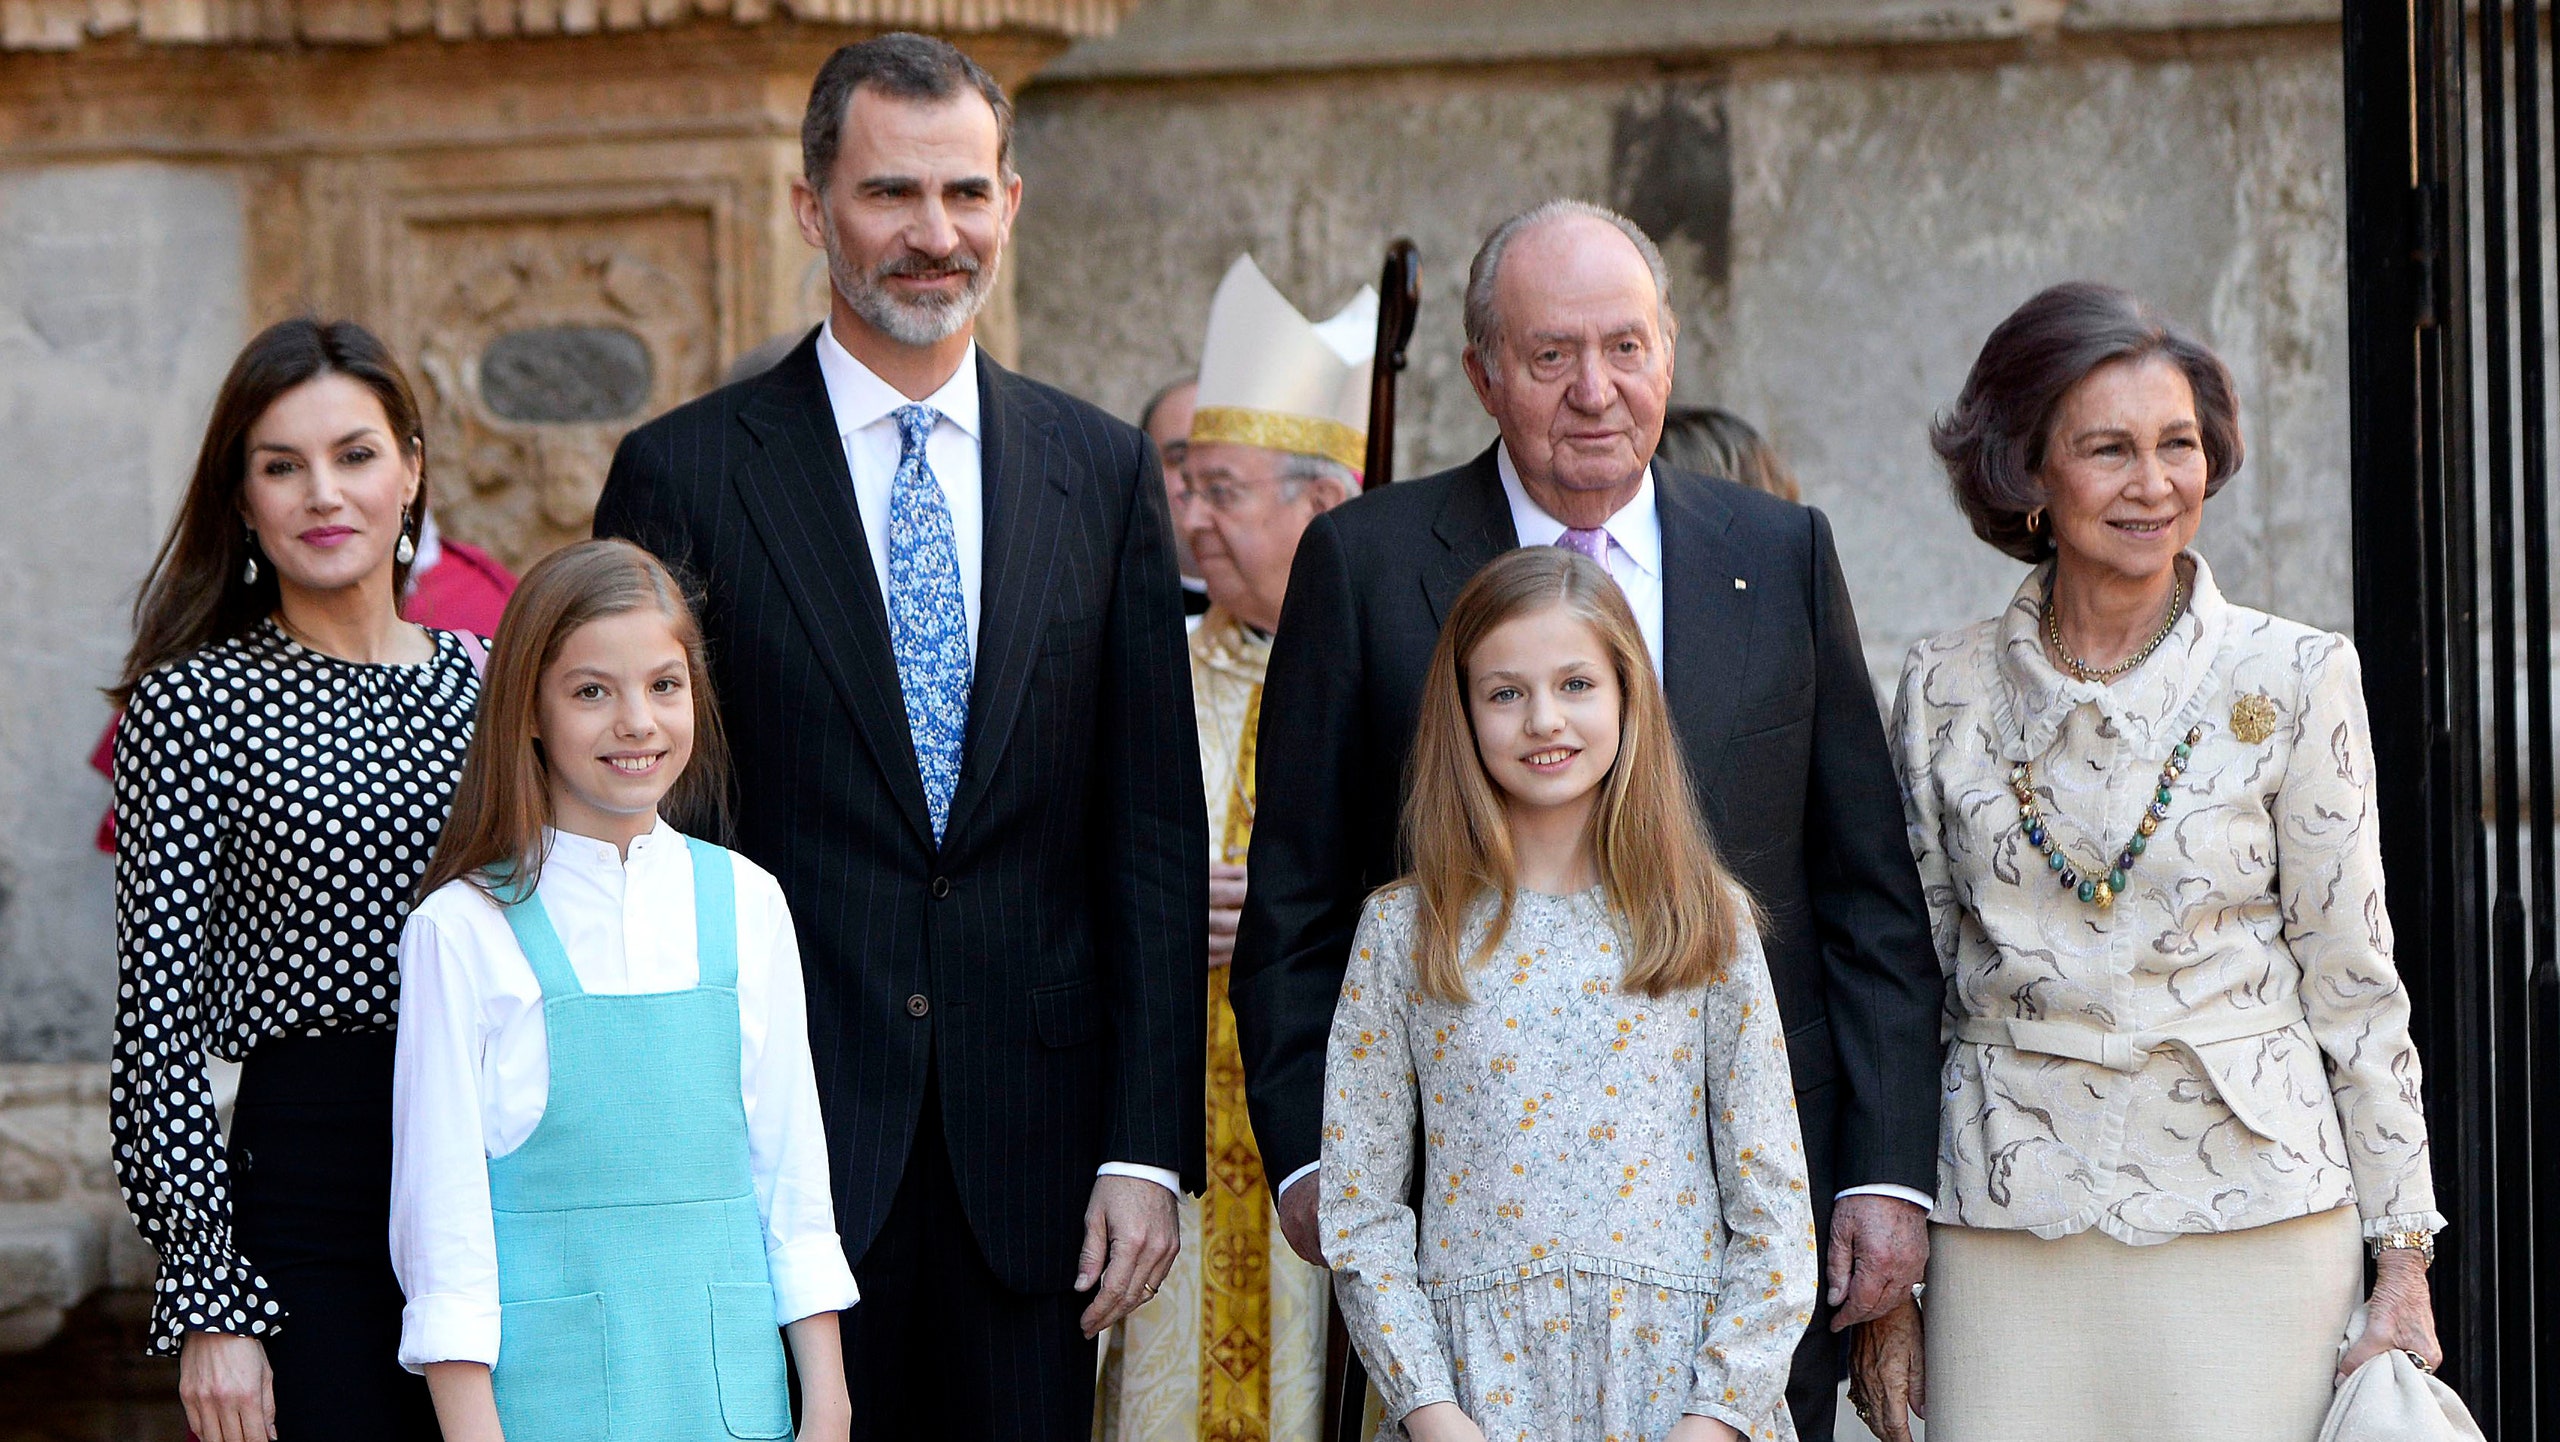 Члены королевской семьи Испании